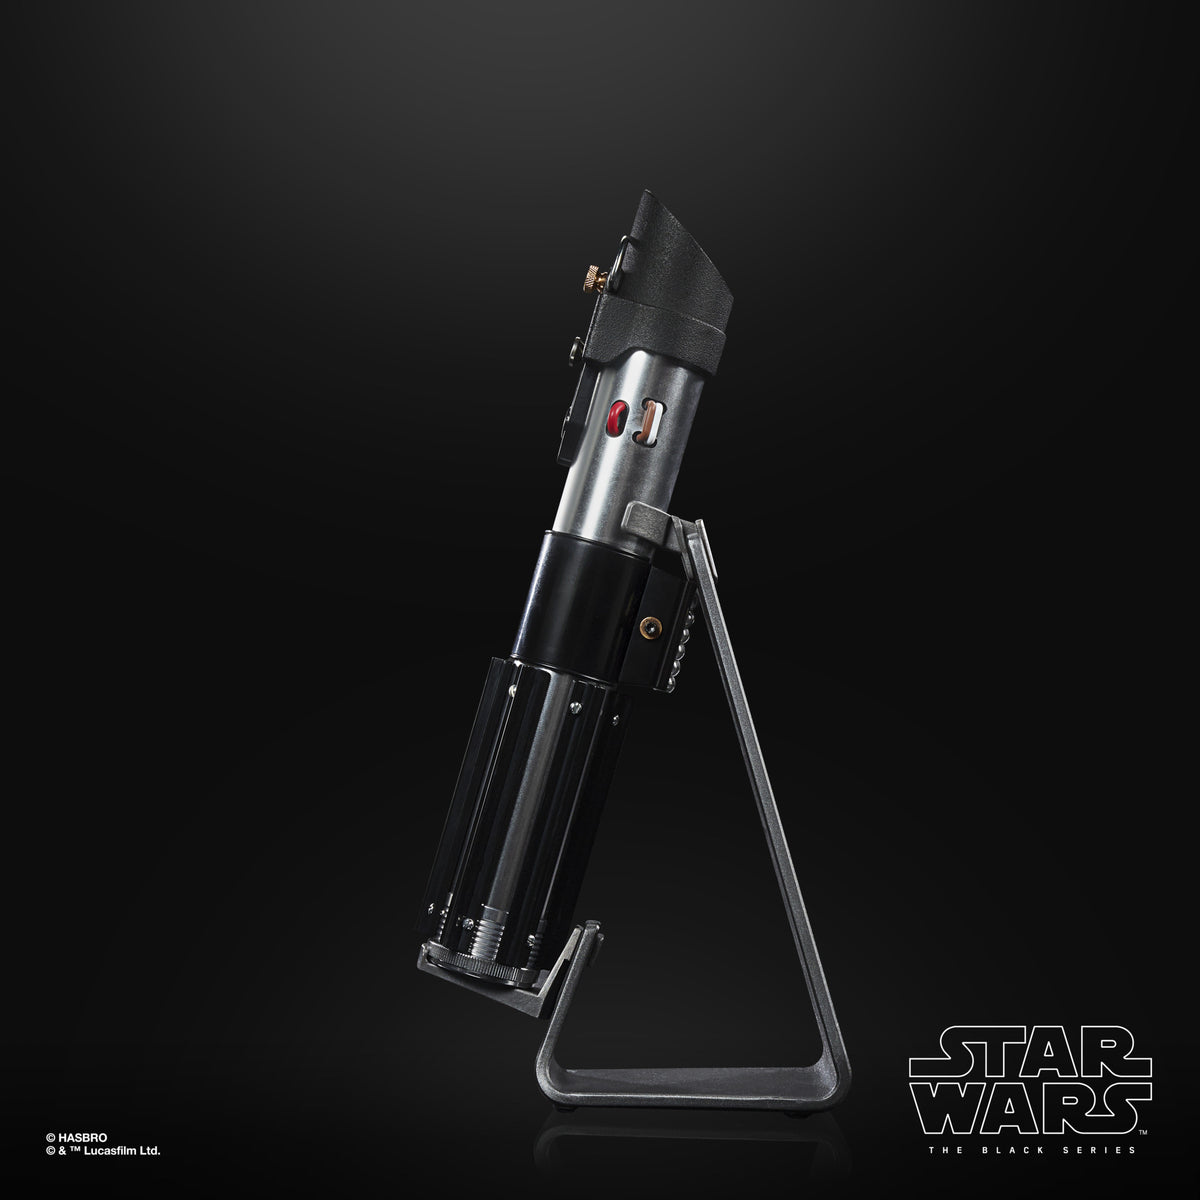 Star Wars The Black Series Darth Vader Force FX Elite Lightsaber – Hasbro  Pulse